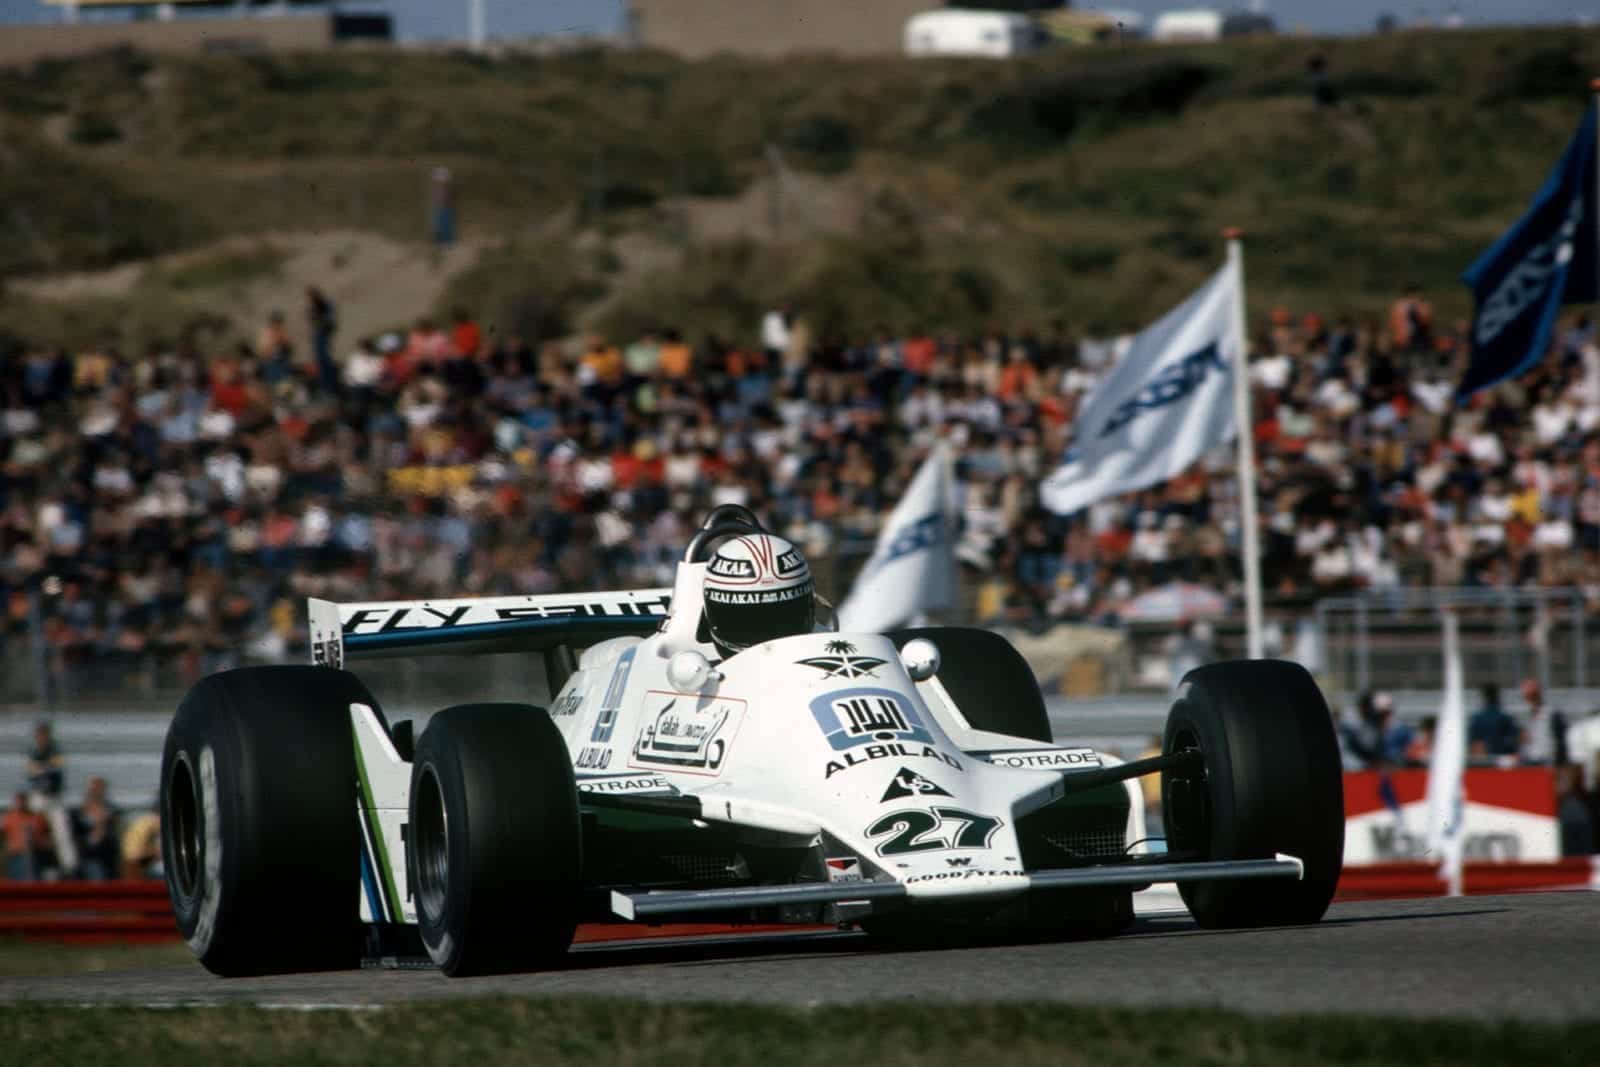 1979 Dutch GP feature